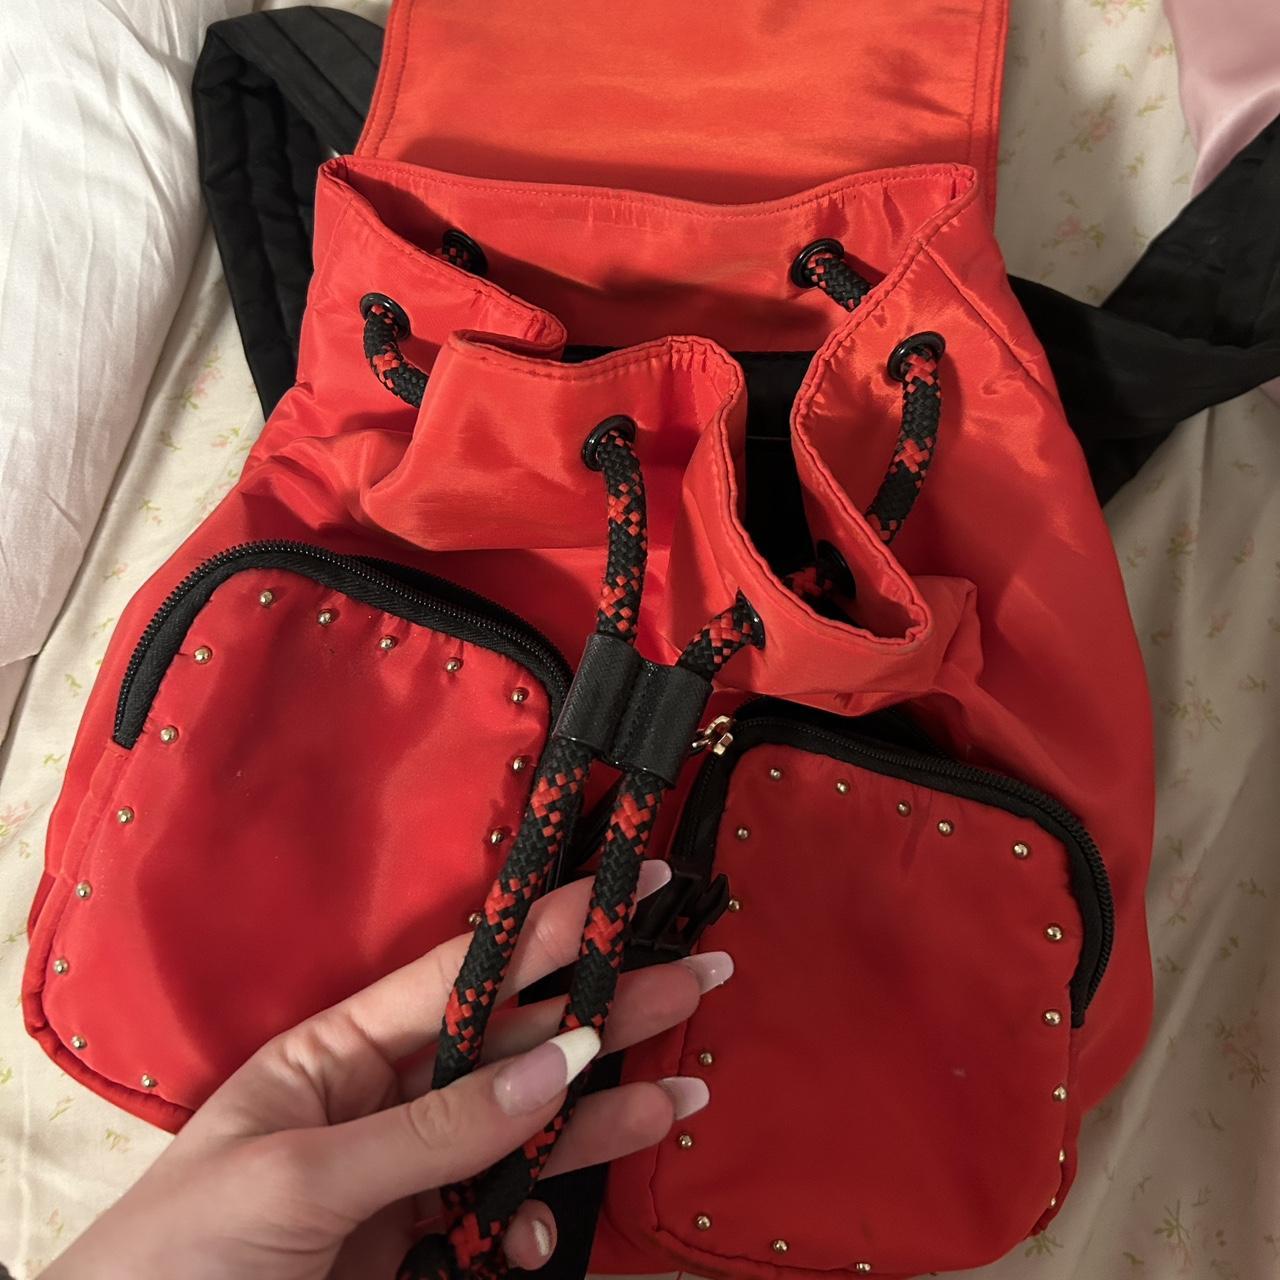 Victoria's Secret Red Backpacks